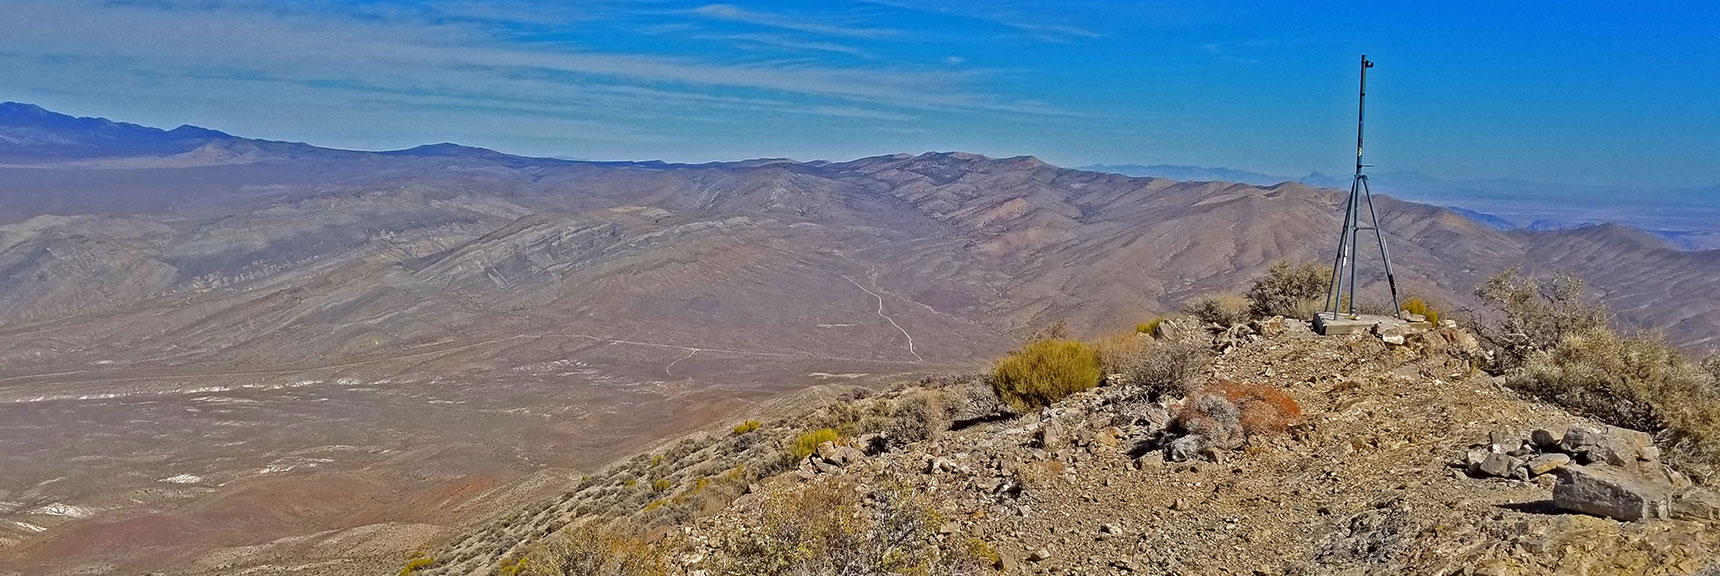 View Northeast. Gass Peak Road Seen in Valley Below. | Gass Peak Grand Crossing | Desert National Wildlife Refuge to Centennial Hills Las Vegas via Gass Peak Summit by Foot